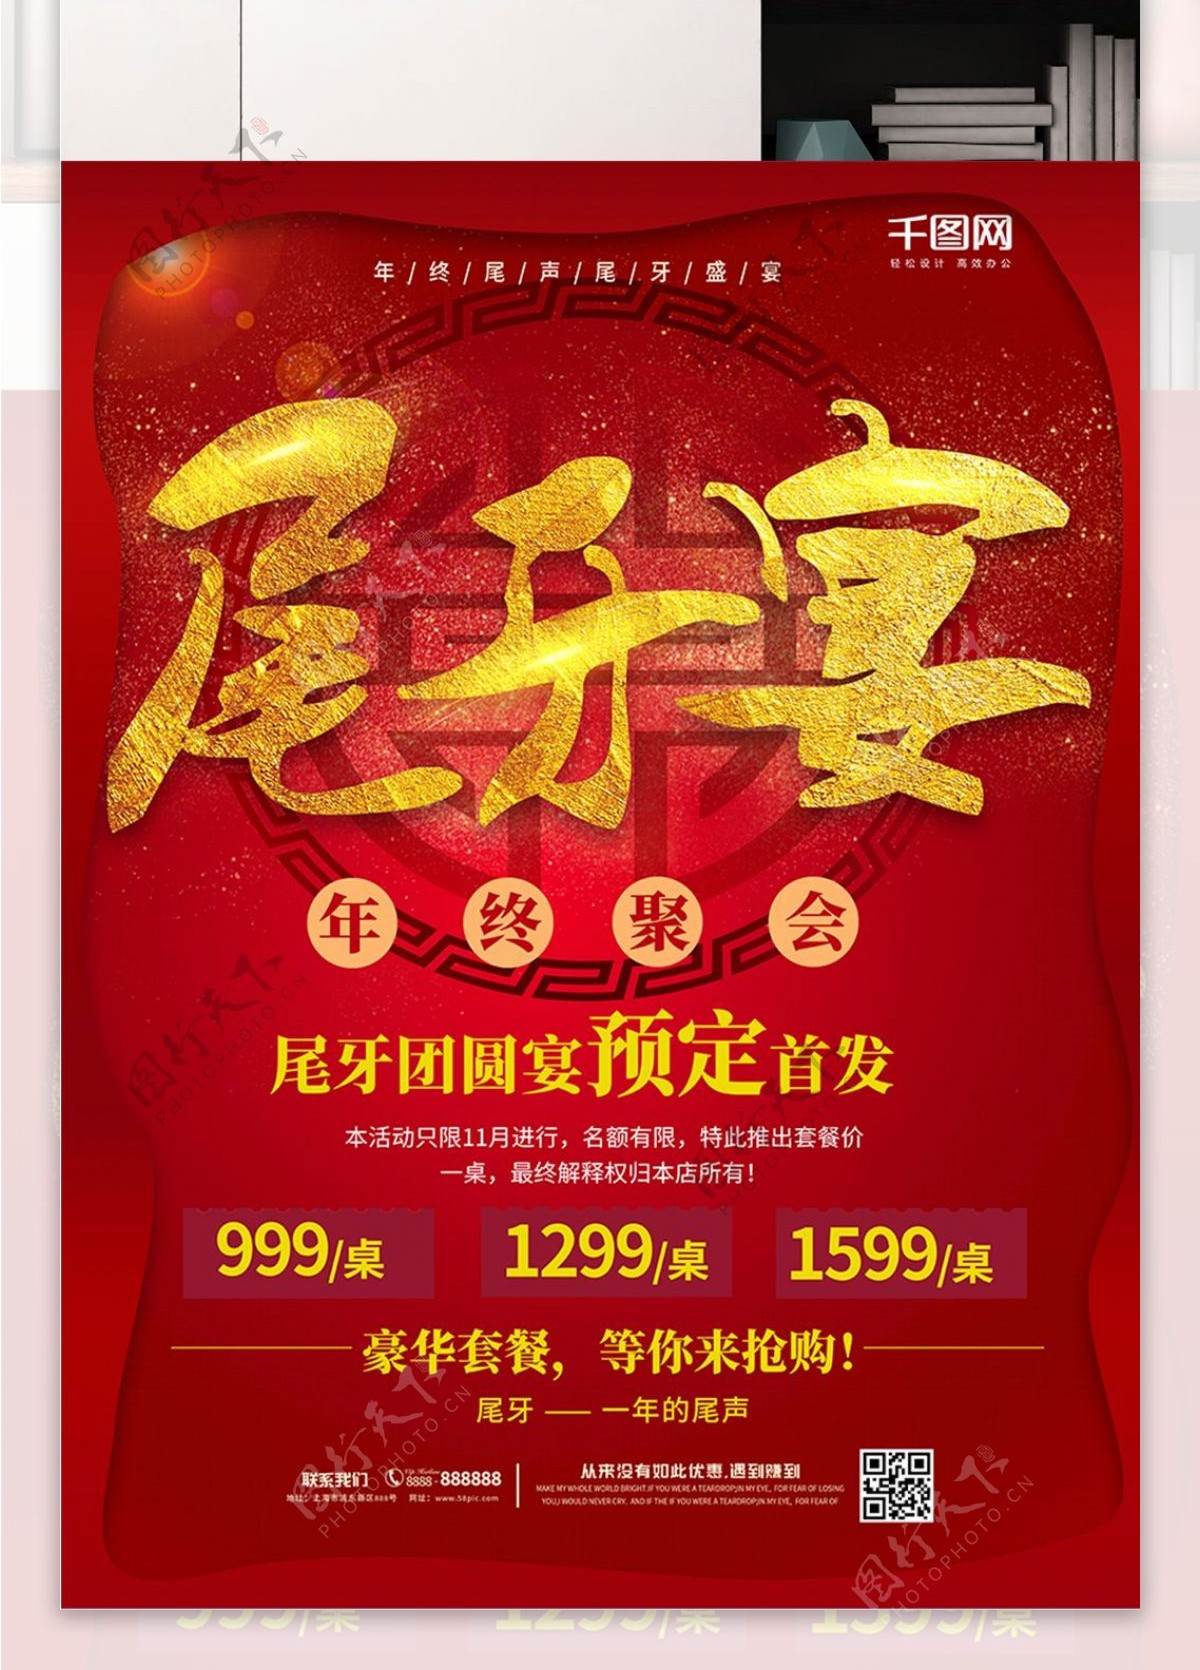 中国红尾牙宴促销海报